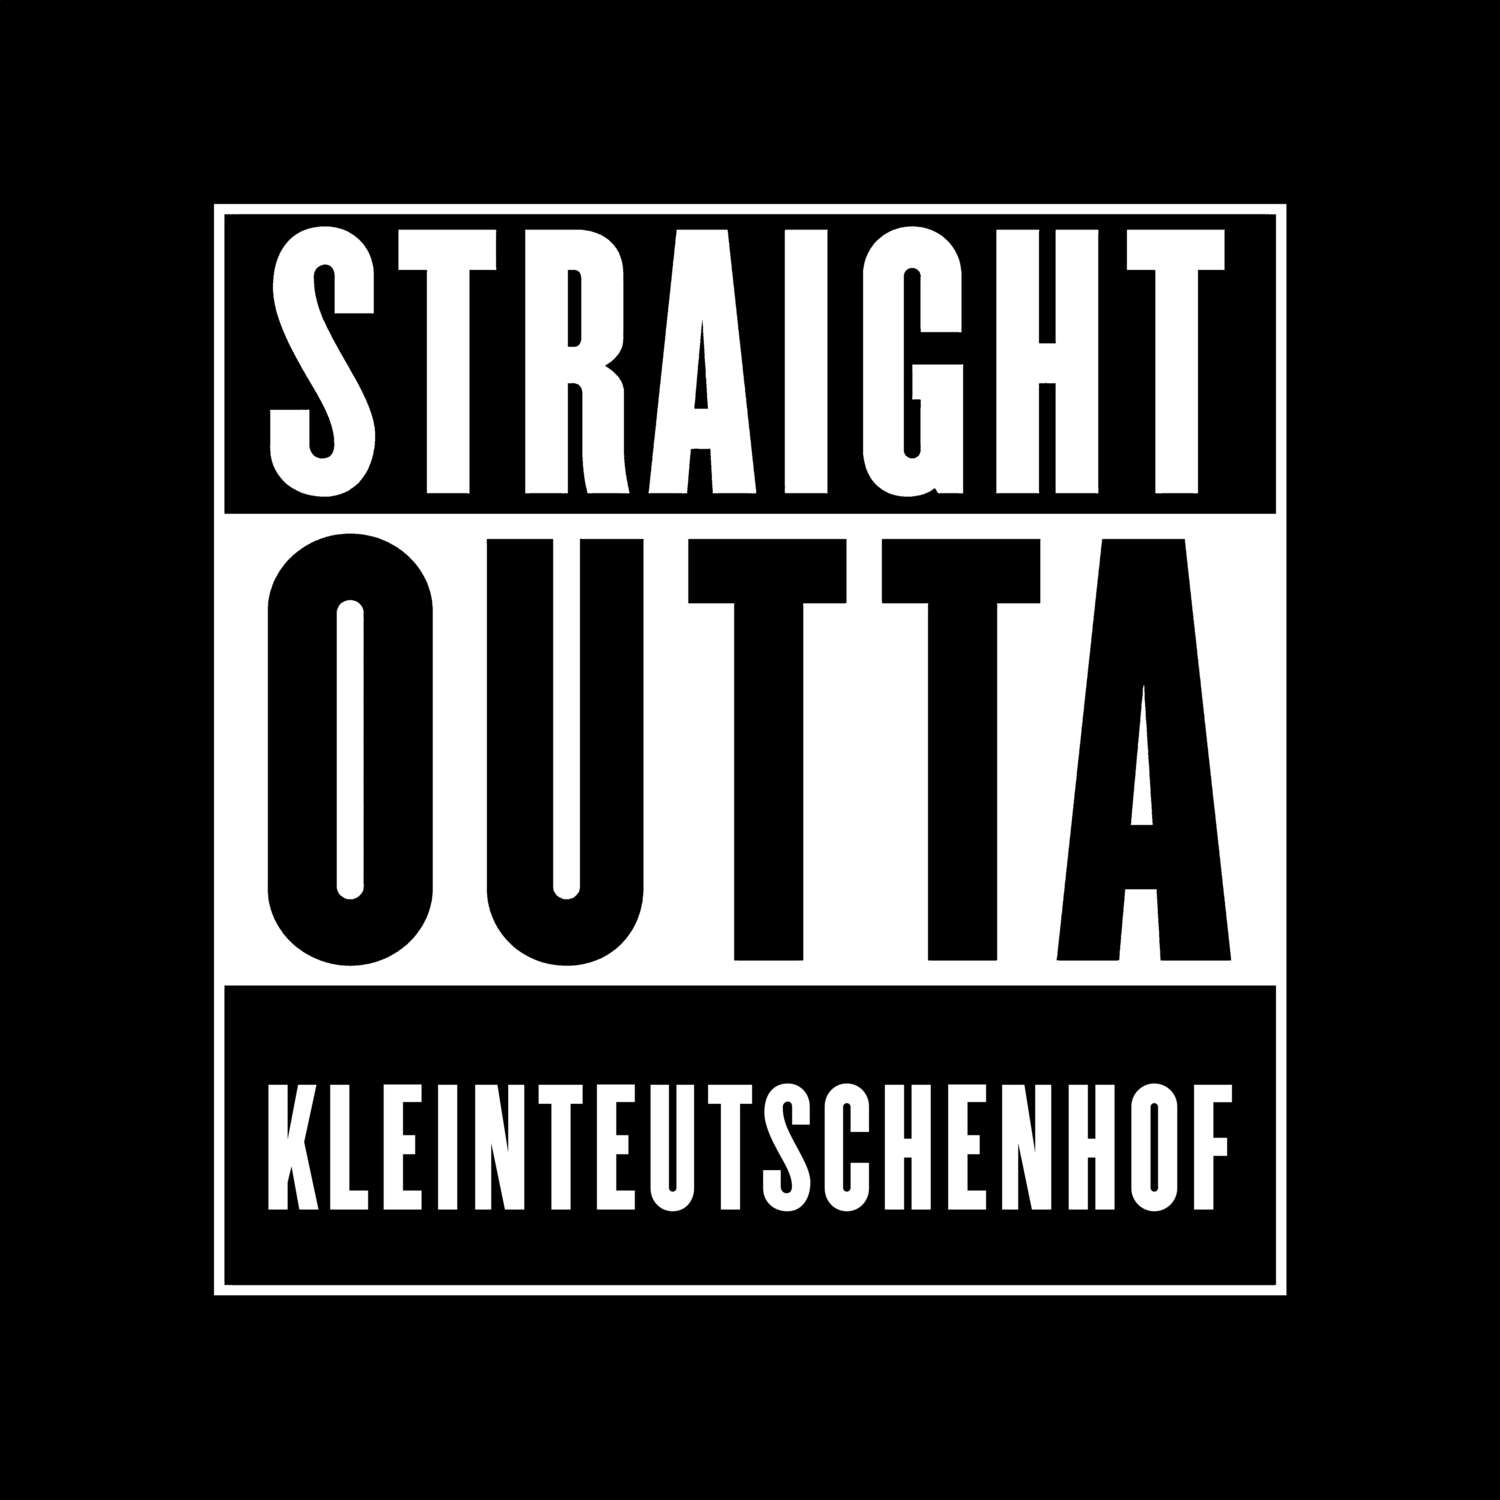 Kleinteutschenhof T-Shirt »Straight Outta«